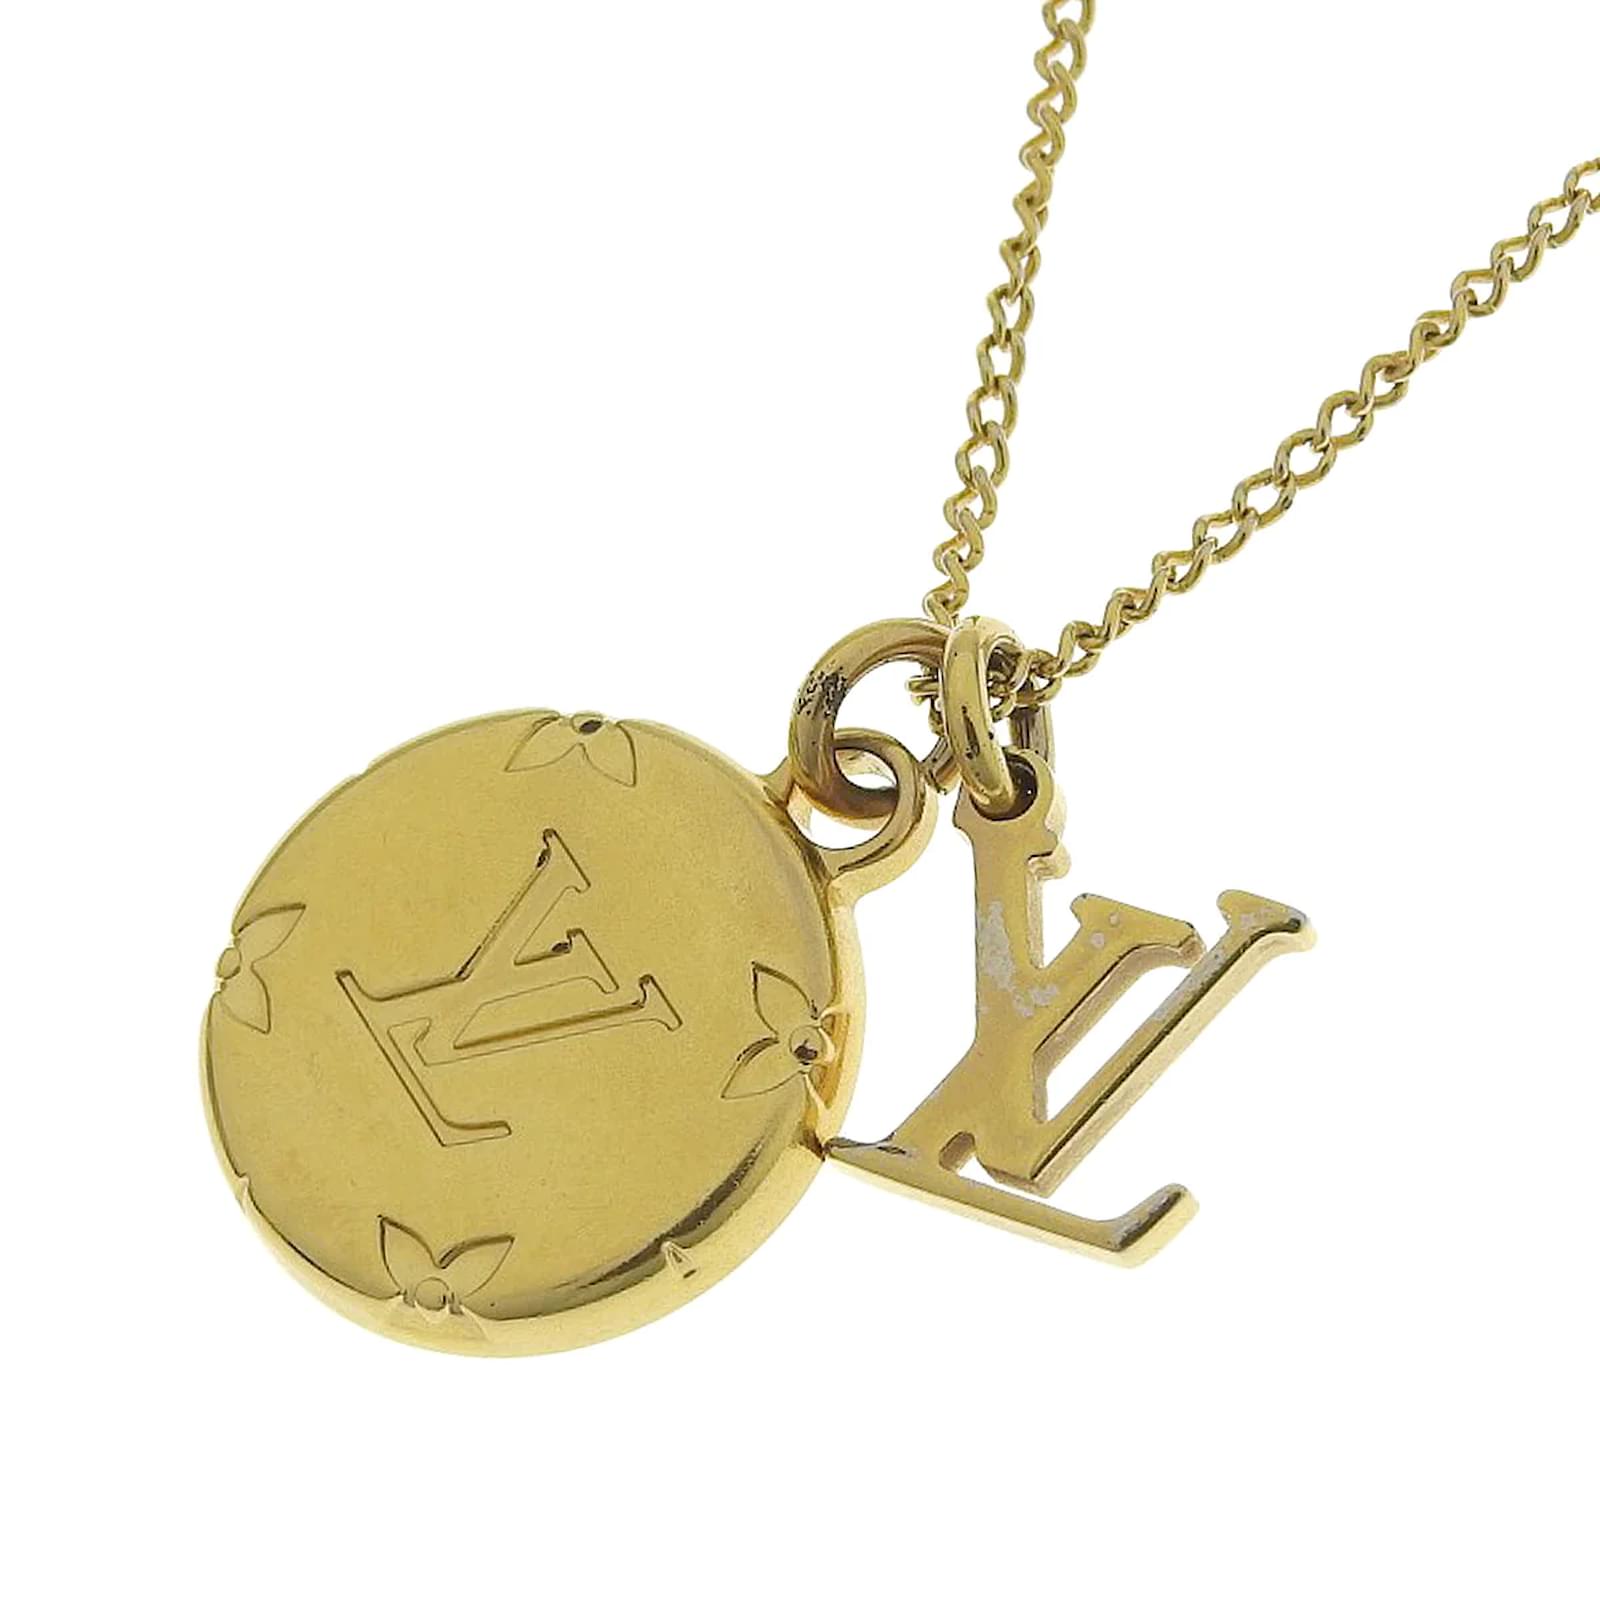 LOUIS VUITTON Monogram Necklace Gold M80189 Accessory 90199700